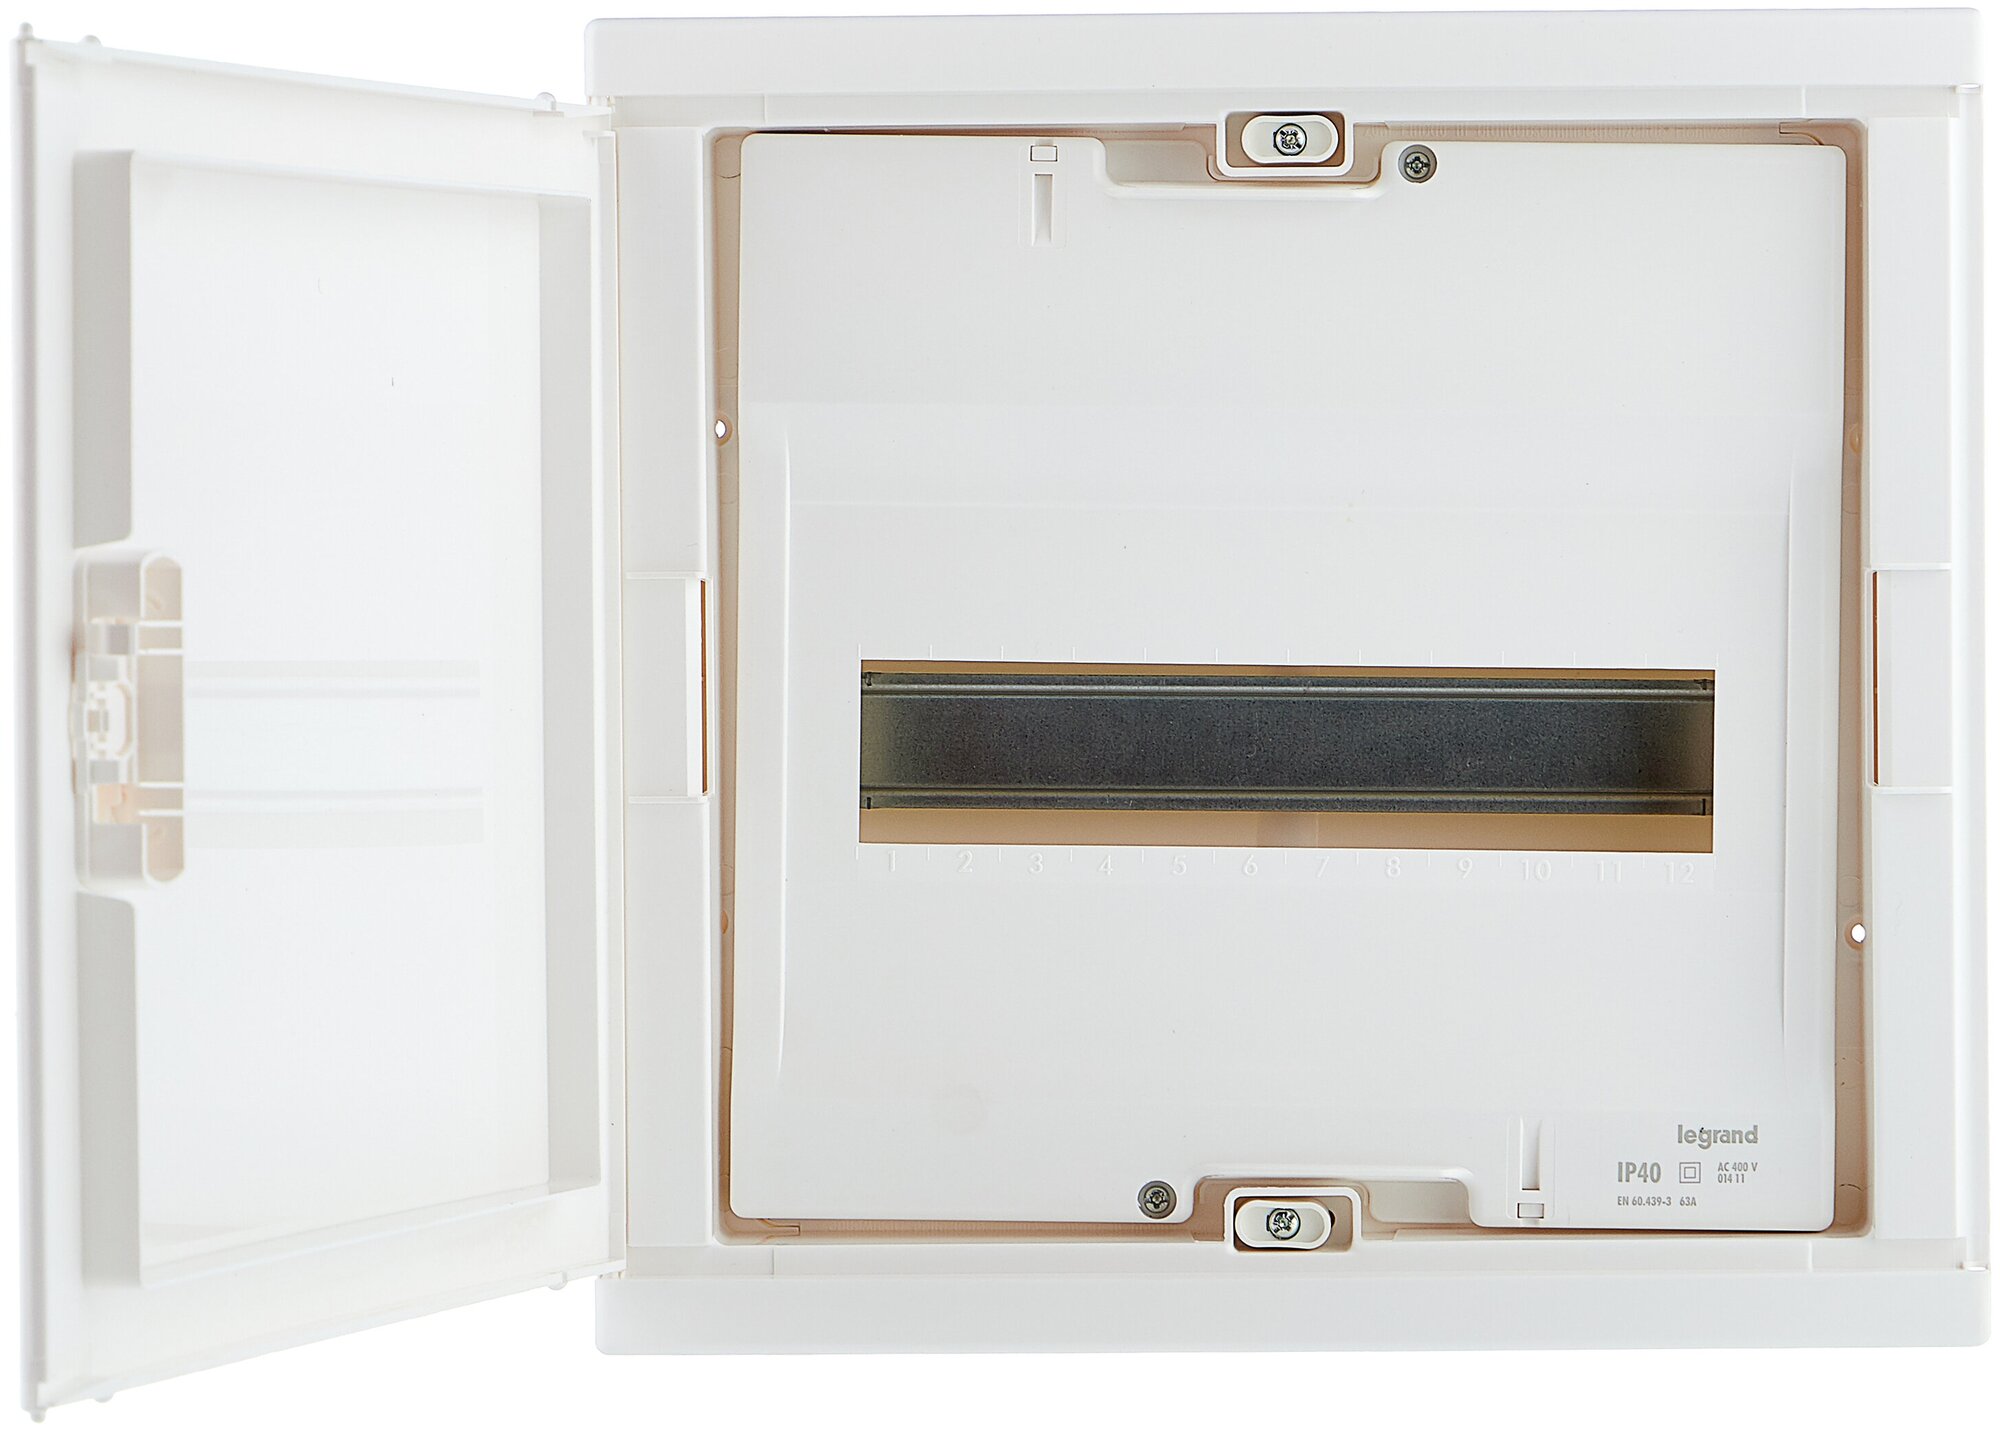 001411 Nedbox Шкаф встраиваемый 12+2М белая дверь Legrand - фото №2